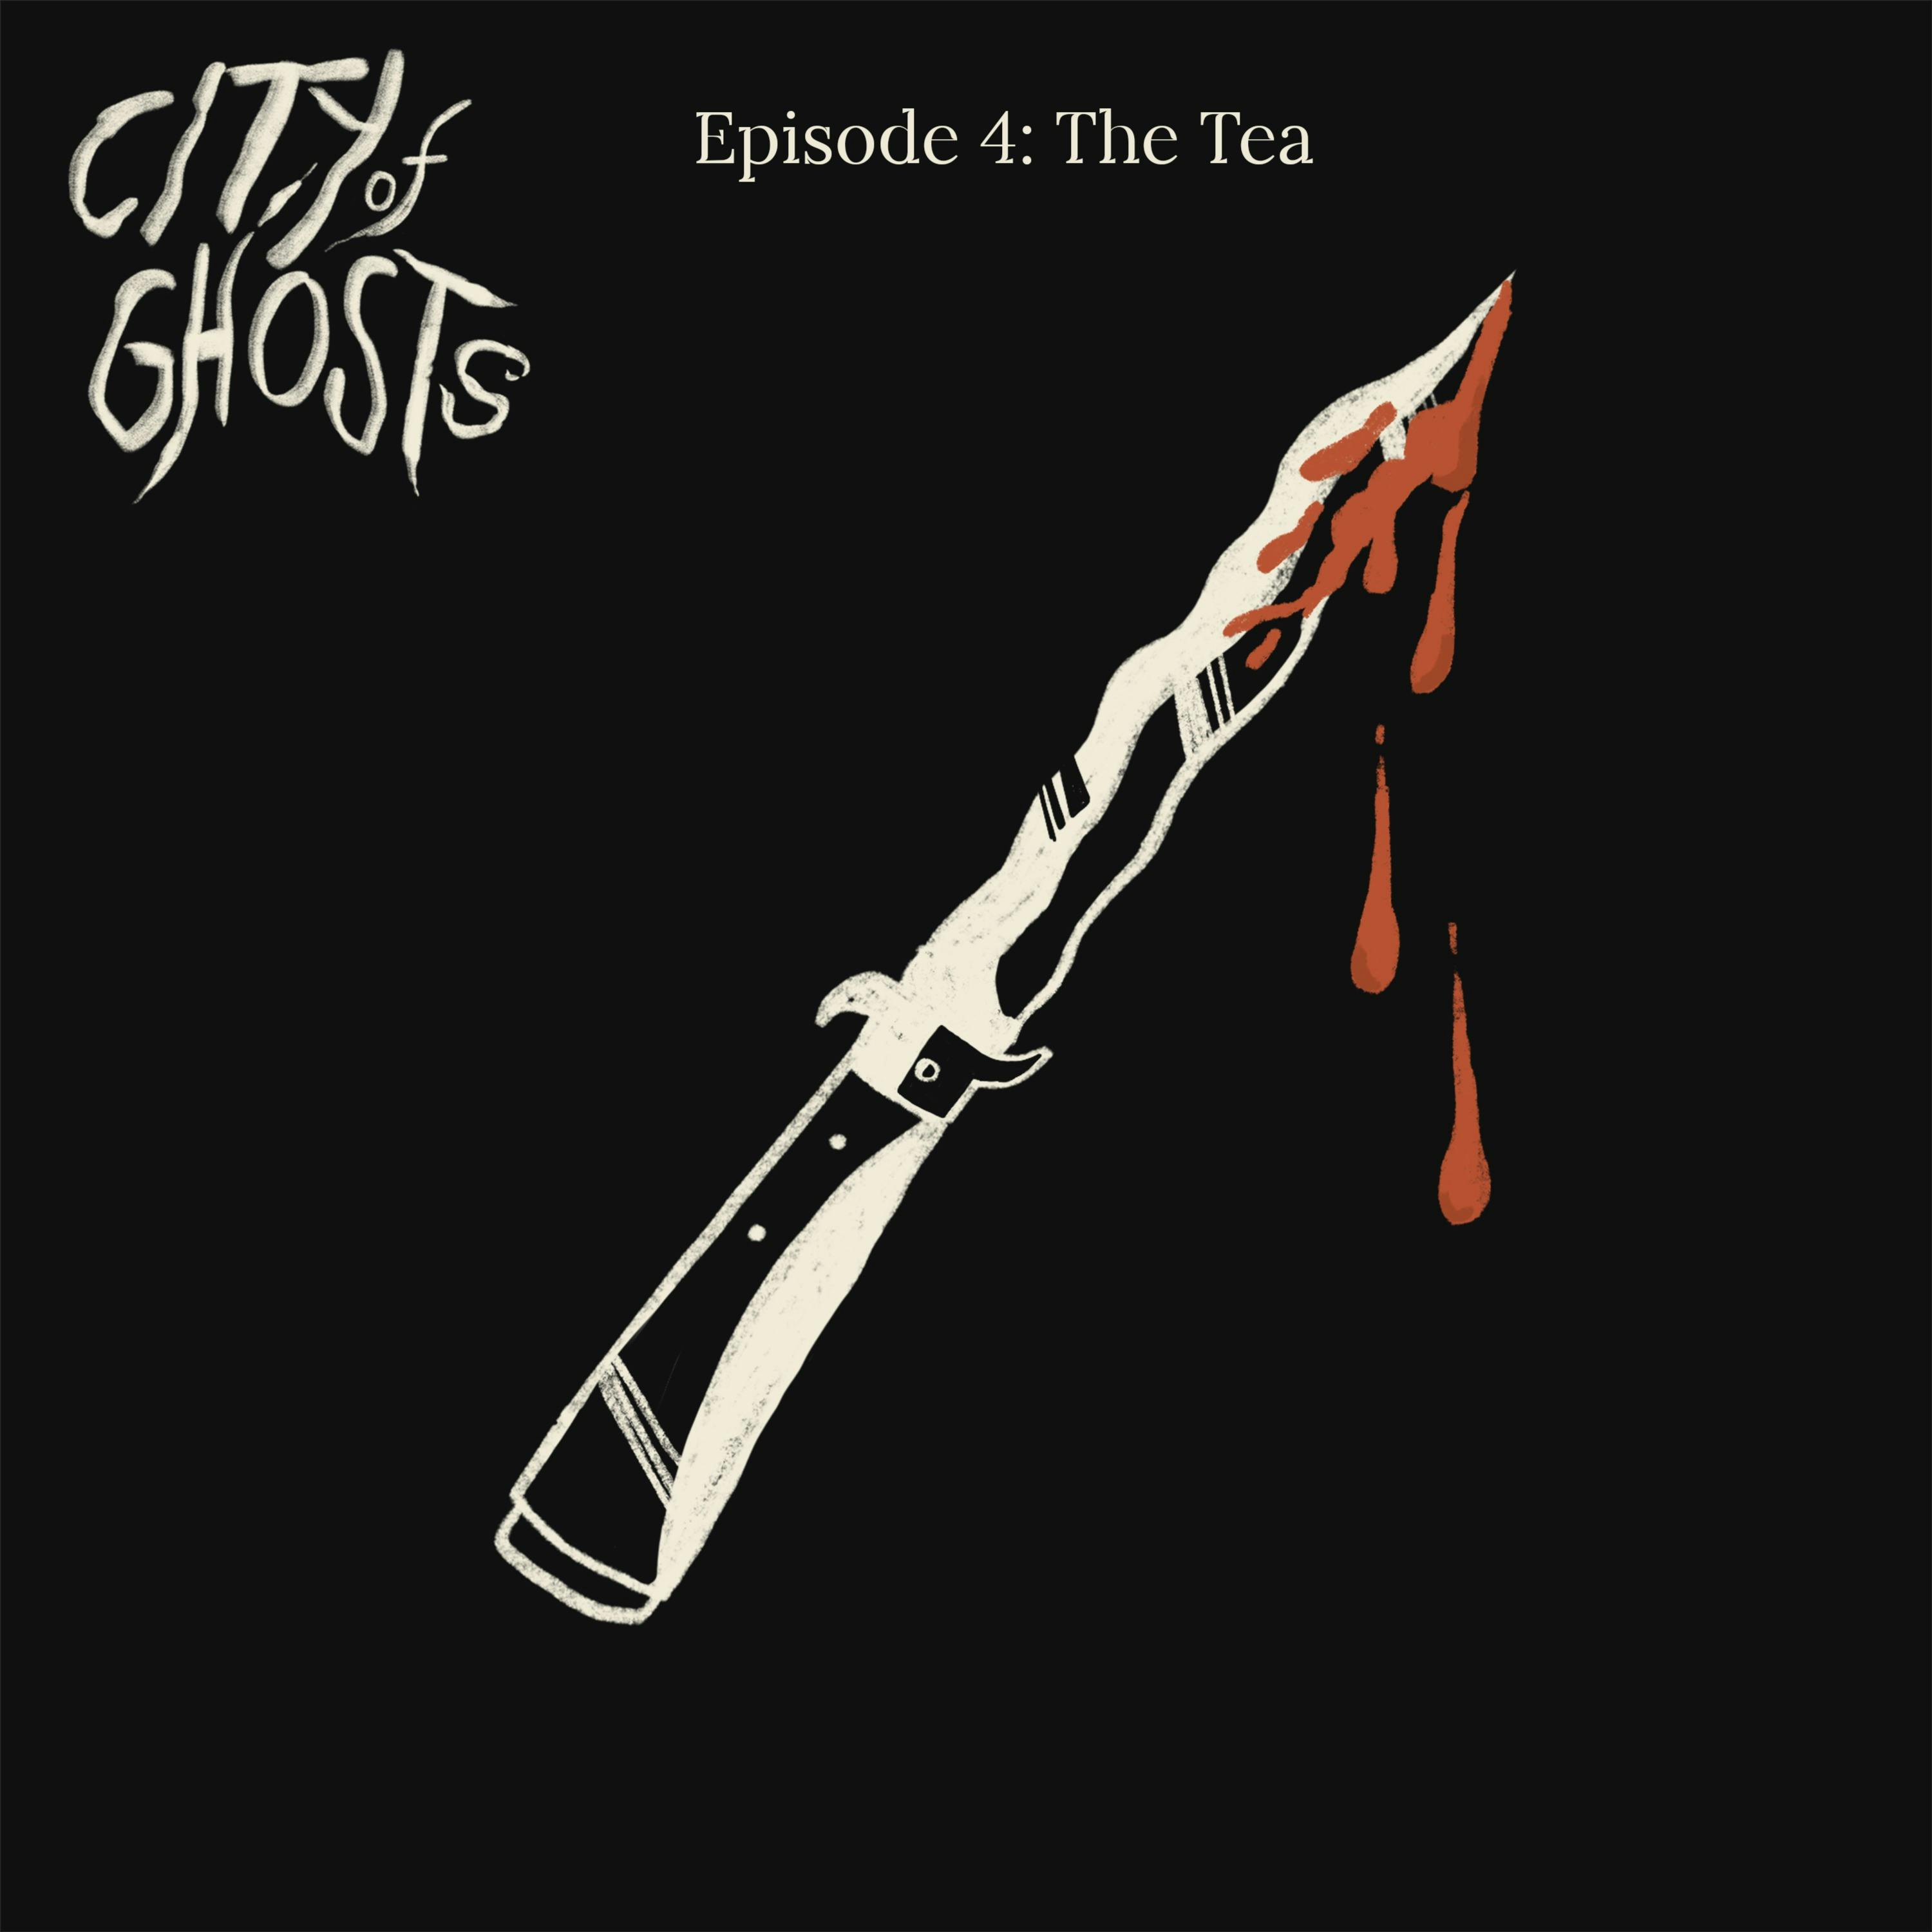 Episode 4: The Tea